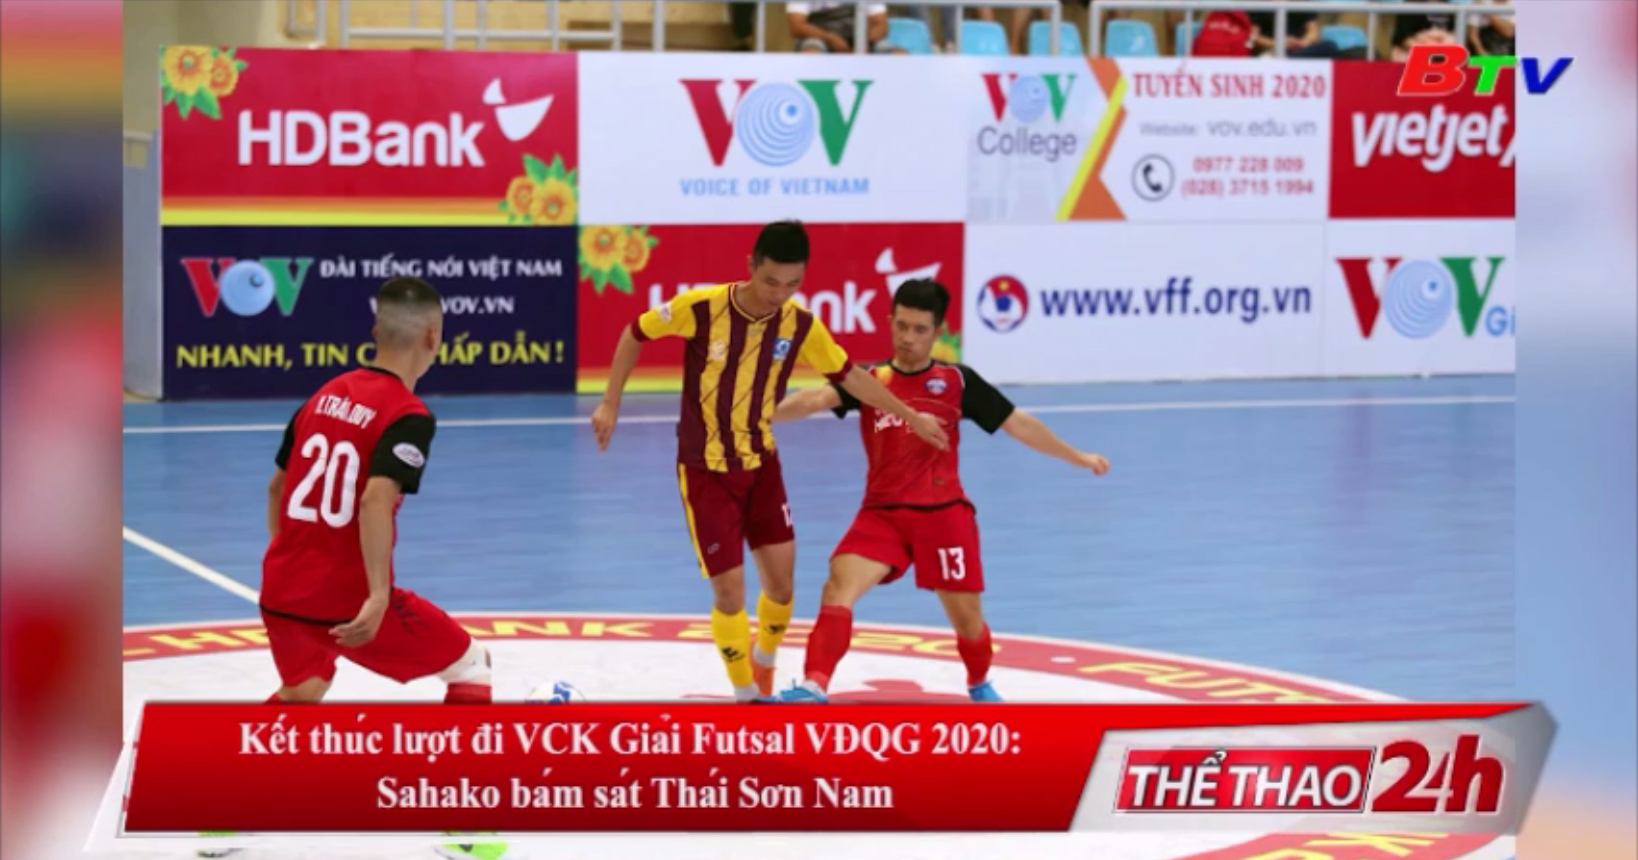 Kết thúc lượt đi VCK Giải Futsal VĐQG 2020 - Sahako bám sát Thái Sơn Nam